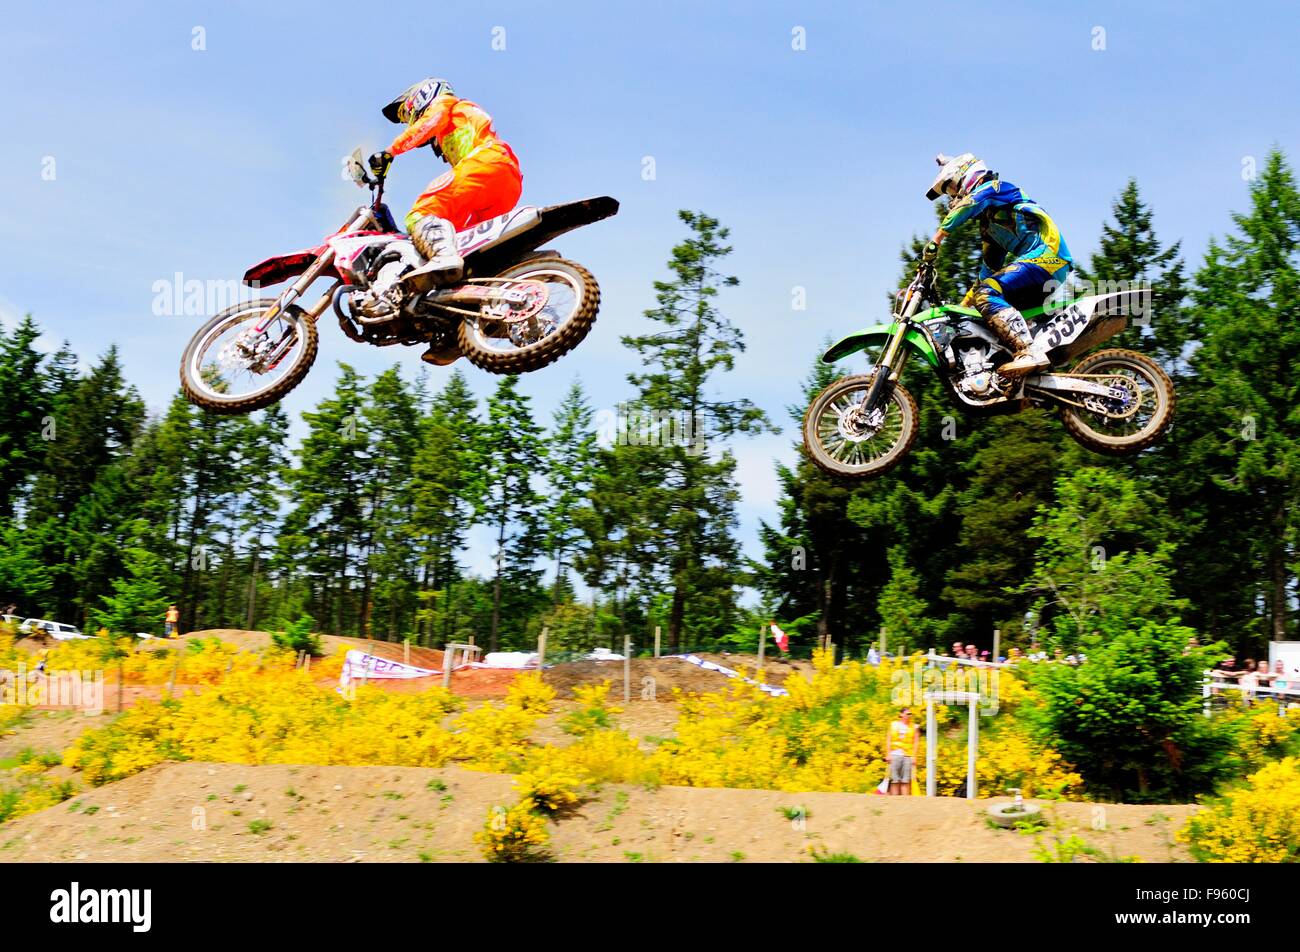 Braden Bury #961 su una Honda e Mark Studbaker #334 su di una Kawasaki get airborne durante un evento di motocross al Rockstar Energy Foto Stock